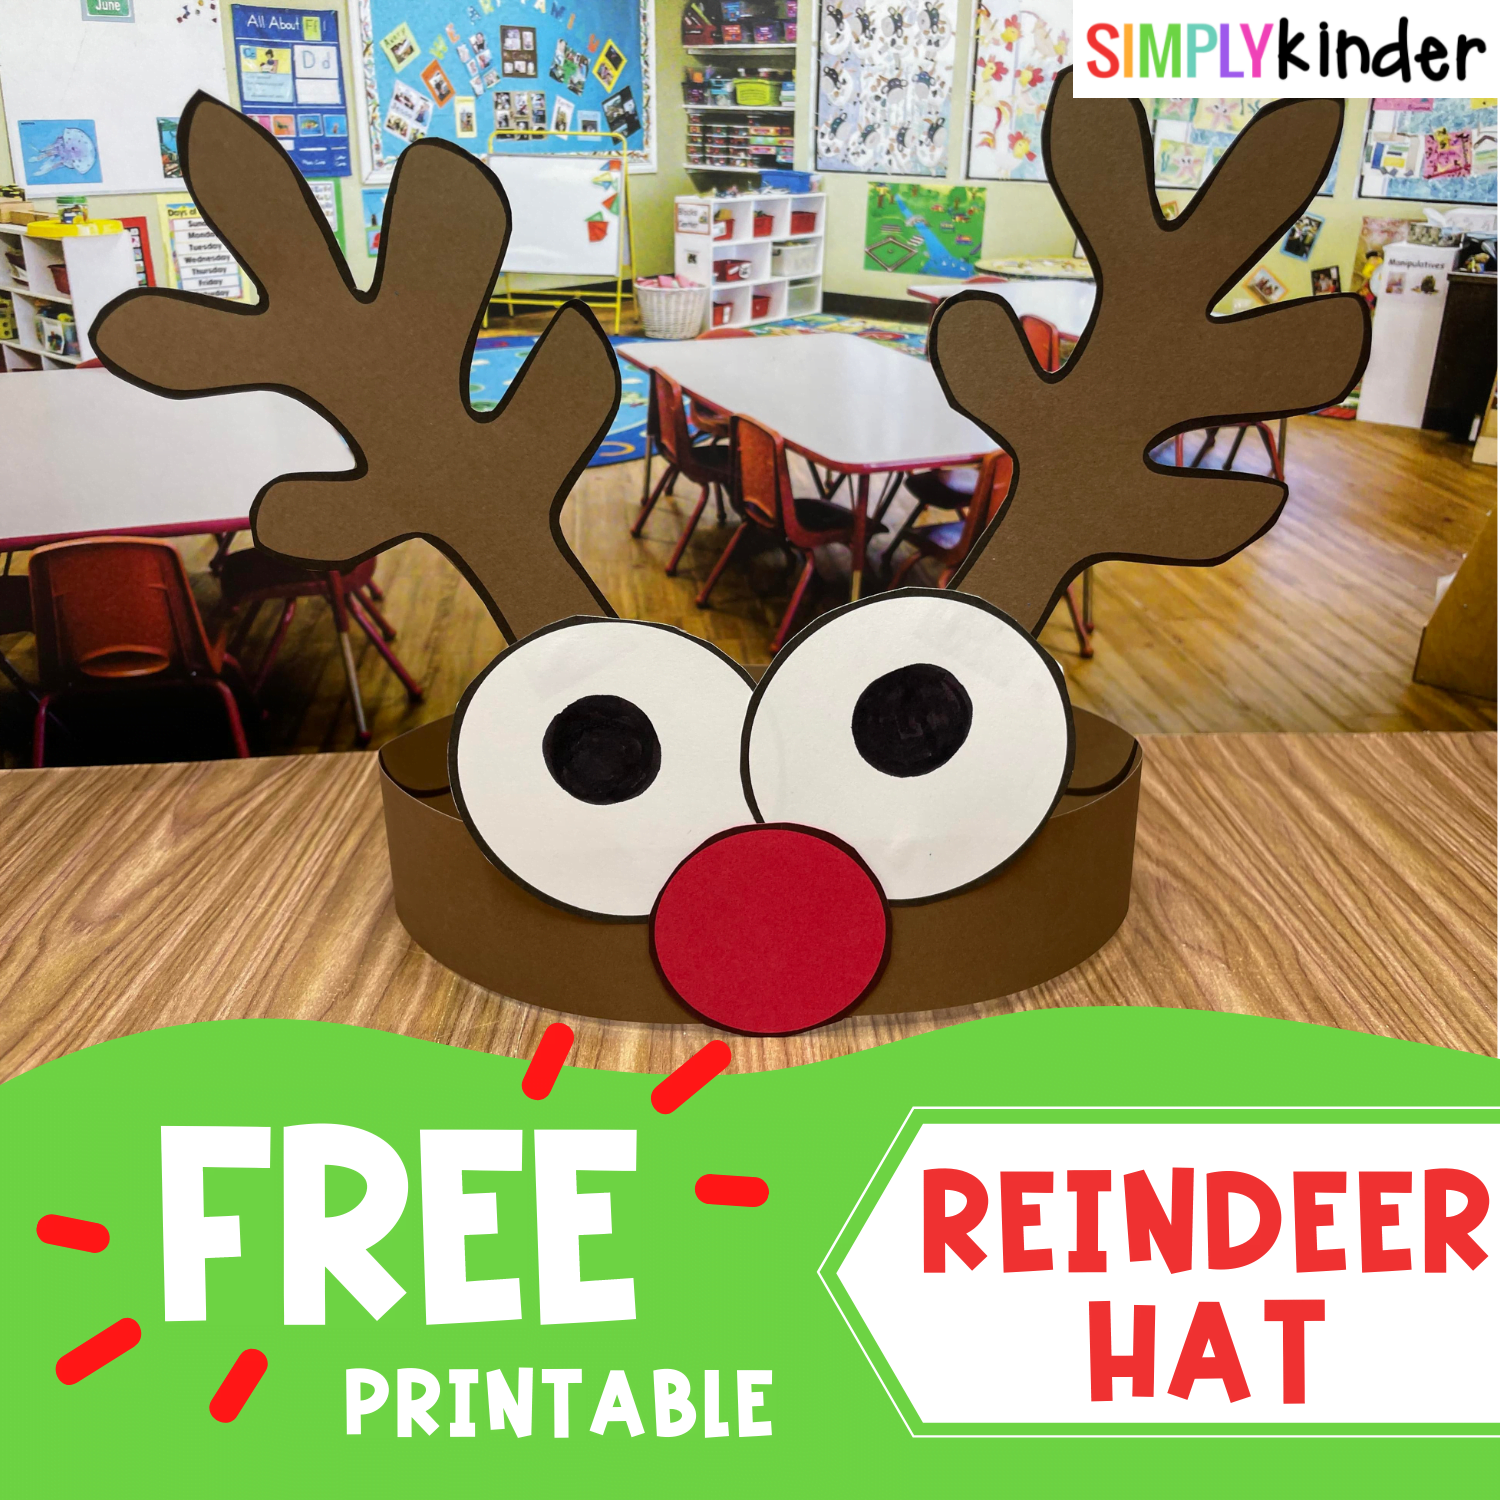 Reindeer Hat Free Printable Simply Kinder